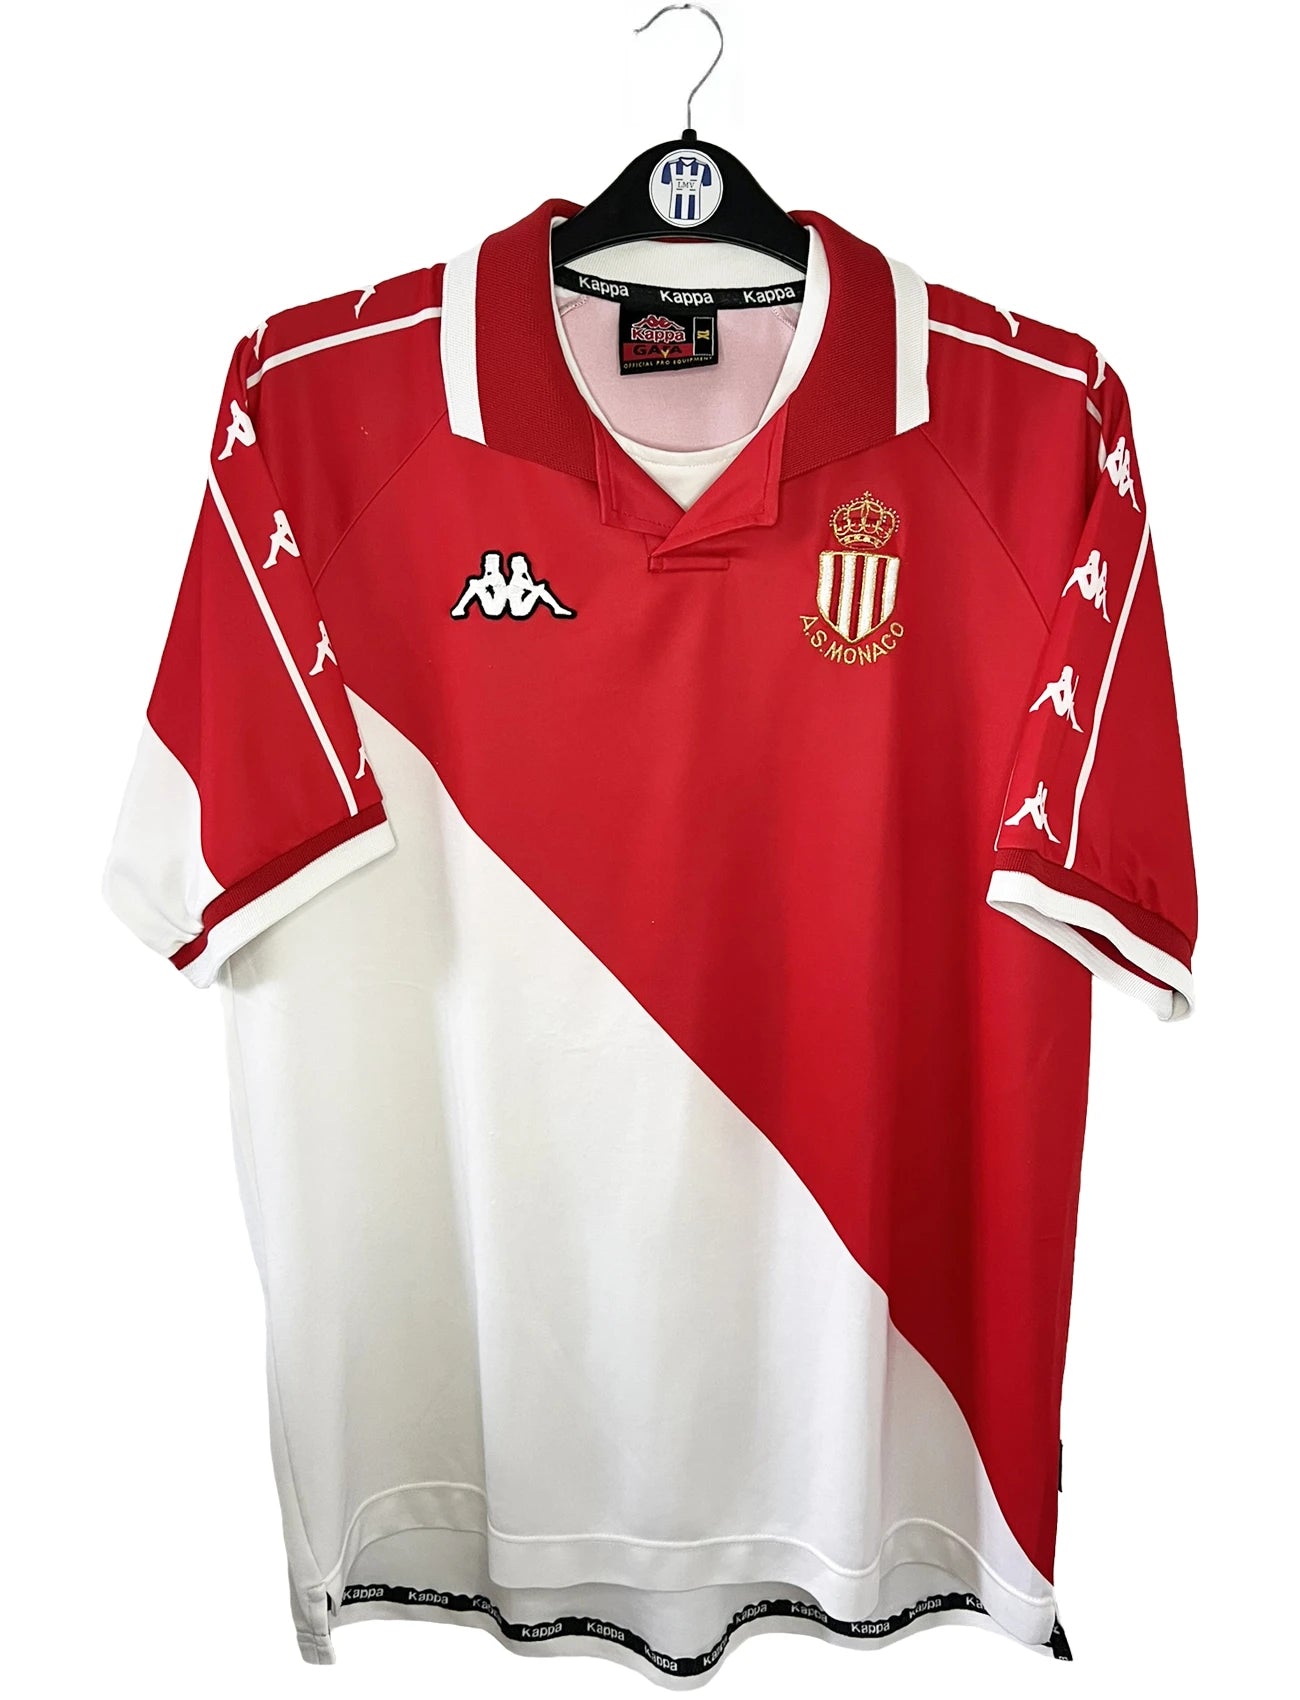 Maillot de foot rétro/vintage authentique rouge et blanc Kappa AS Monaco domicile 2000-2001